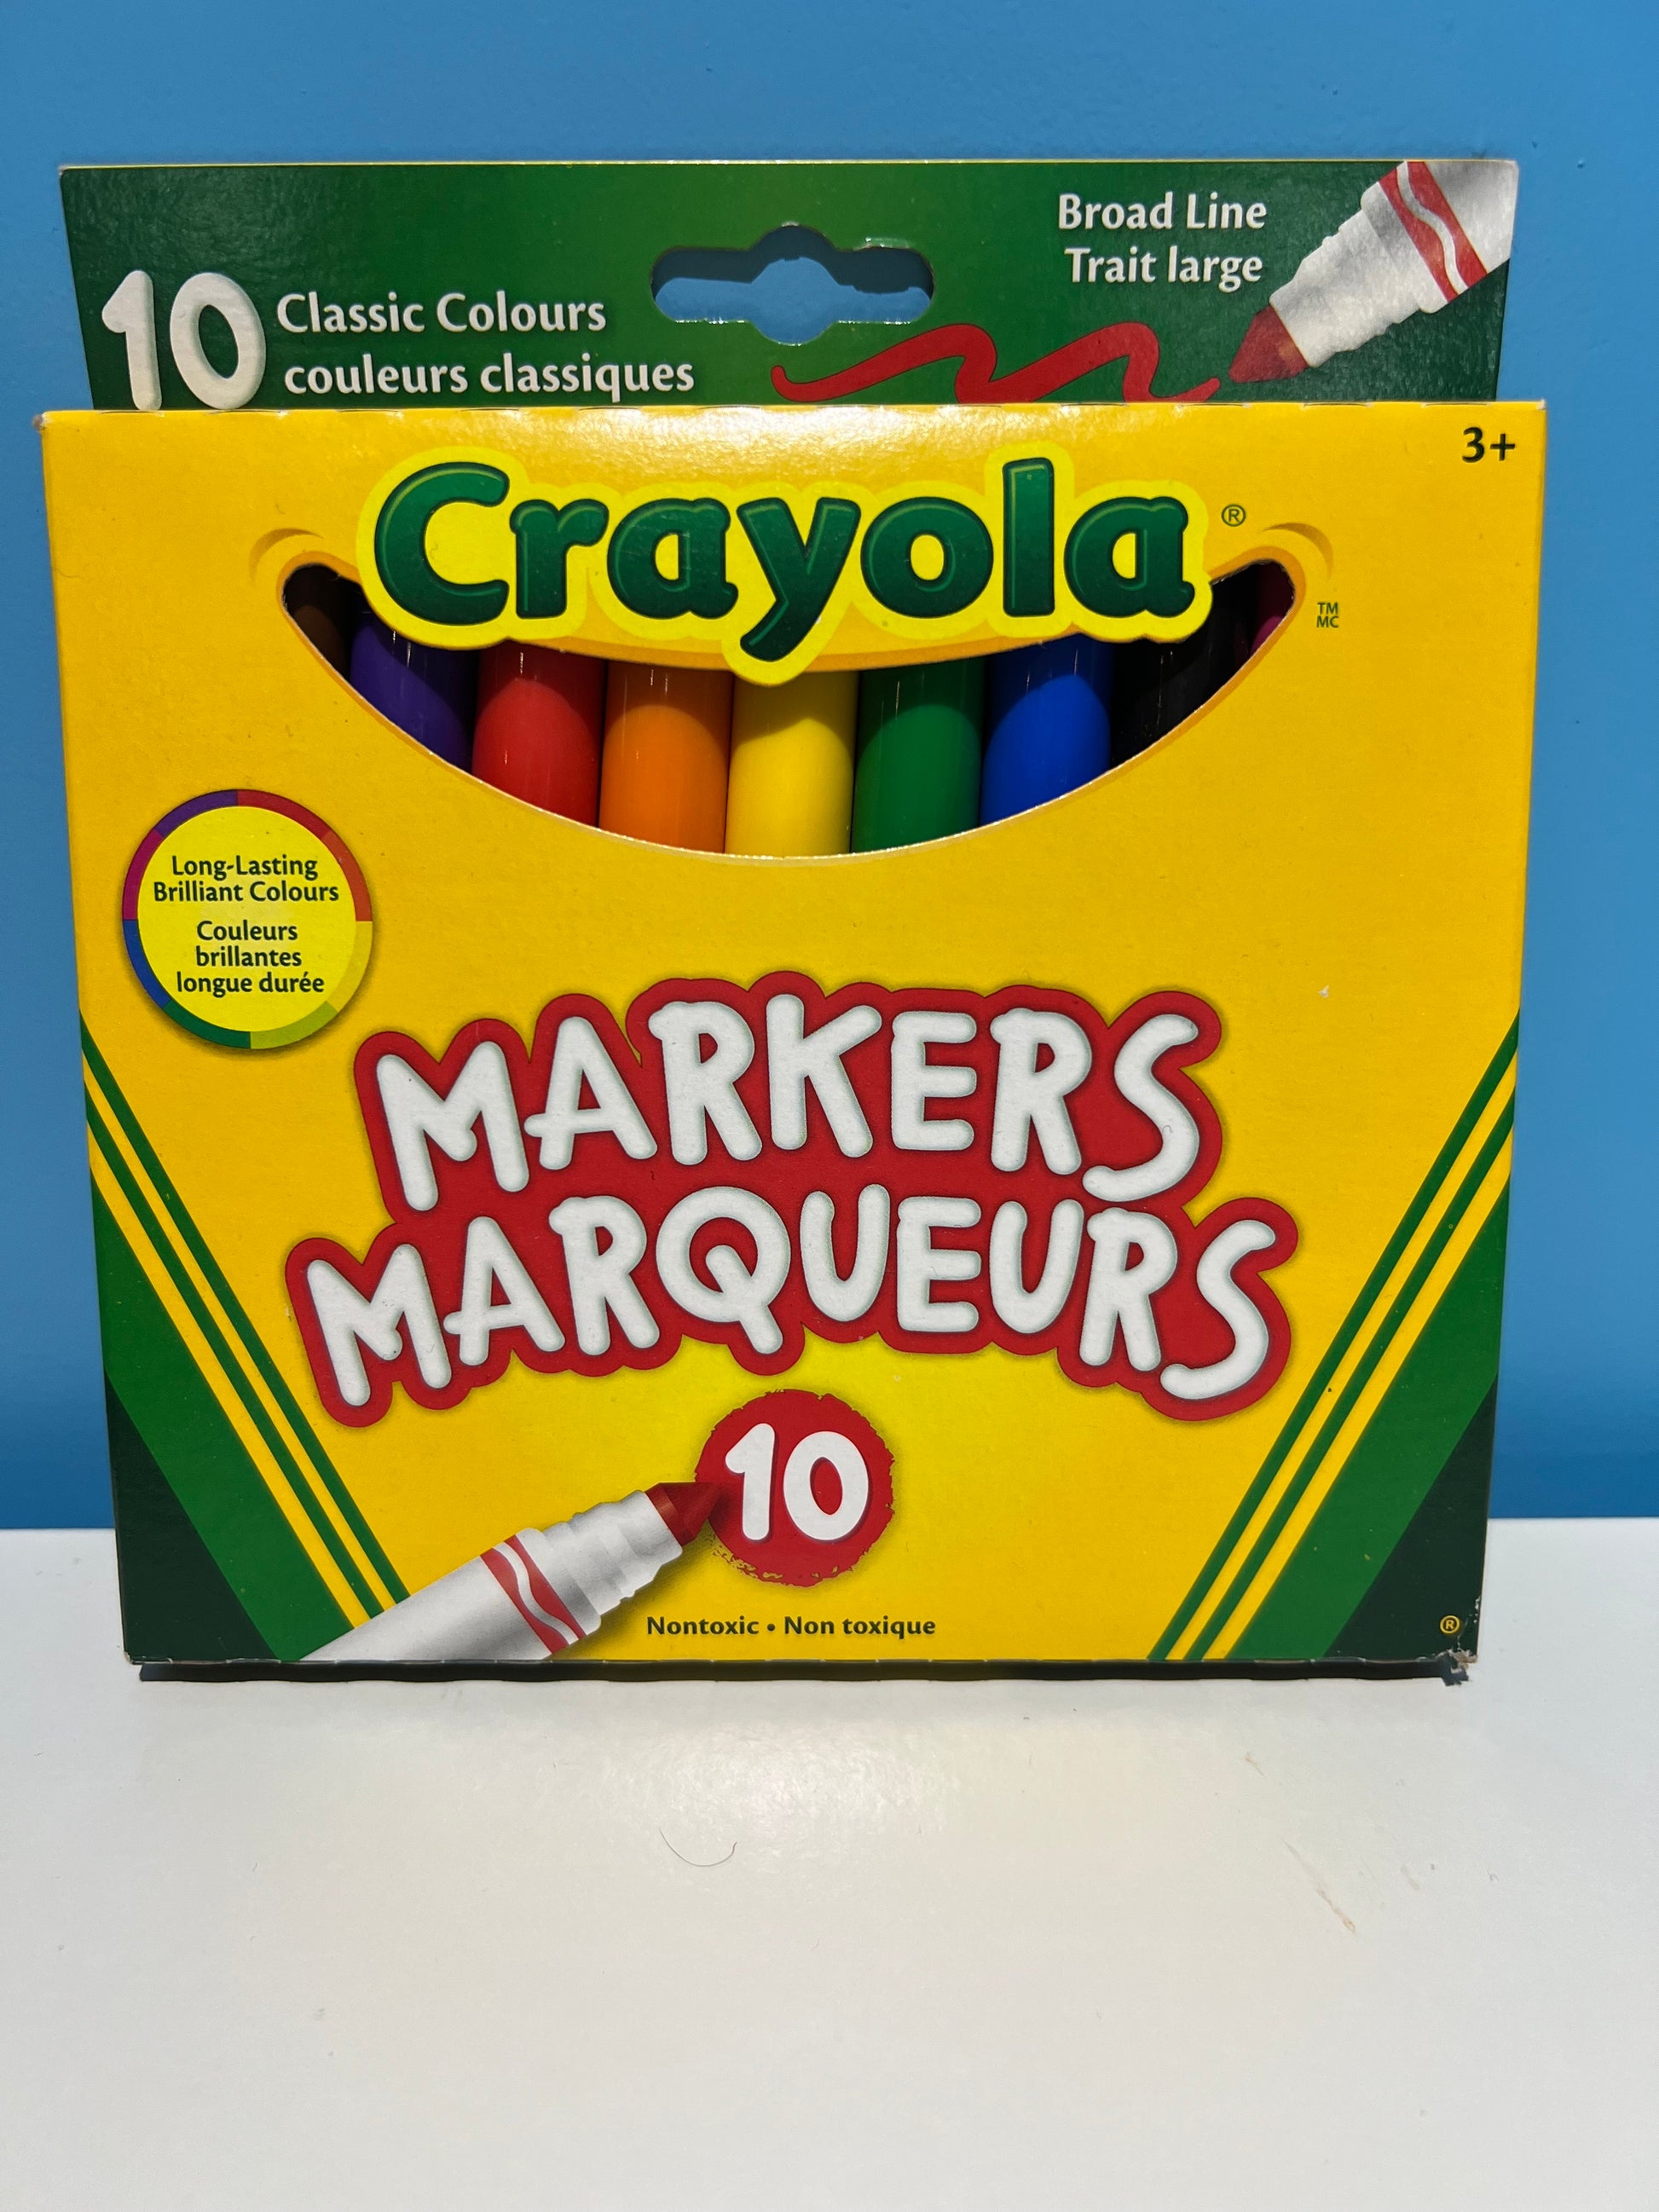 10 marqueurs à fenêtre Crayola